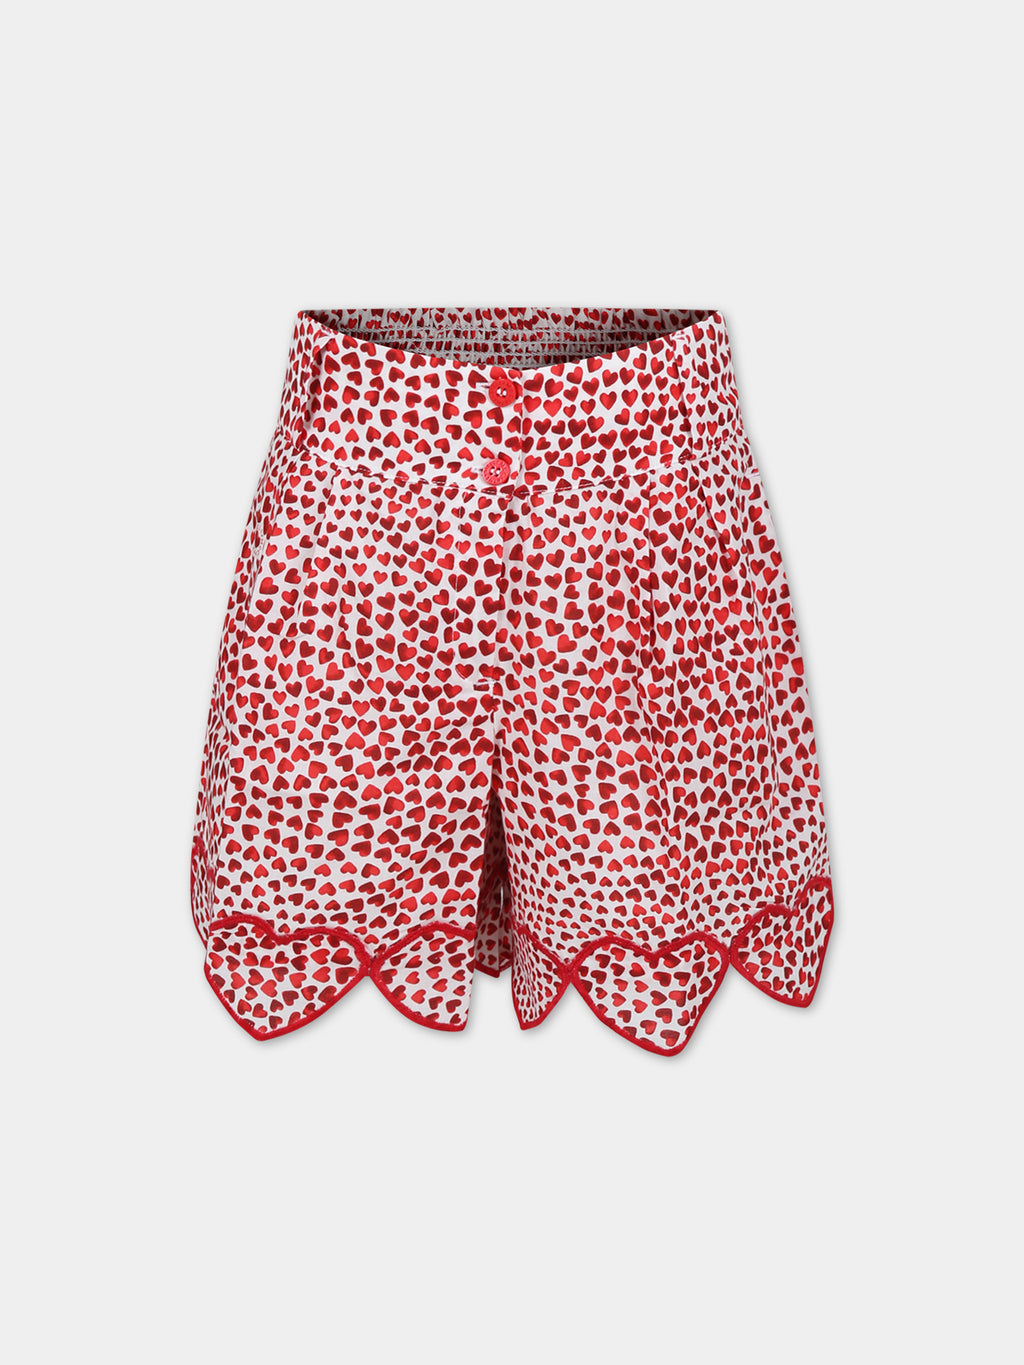 Shorts rossi per bambina con cuori